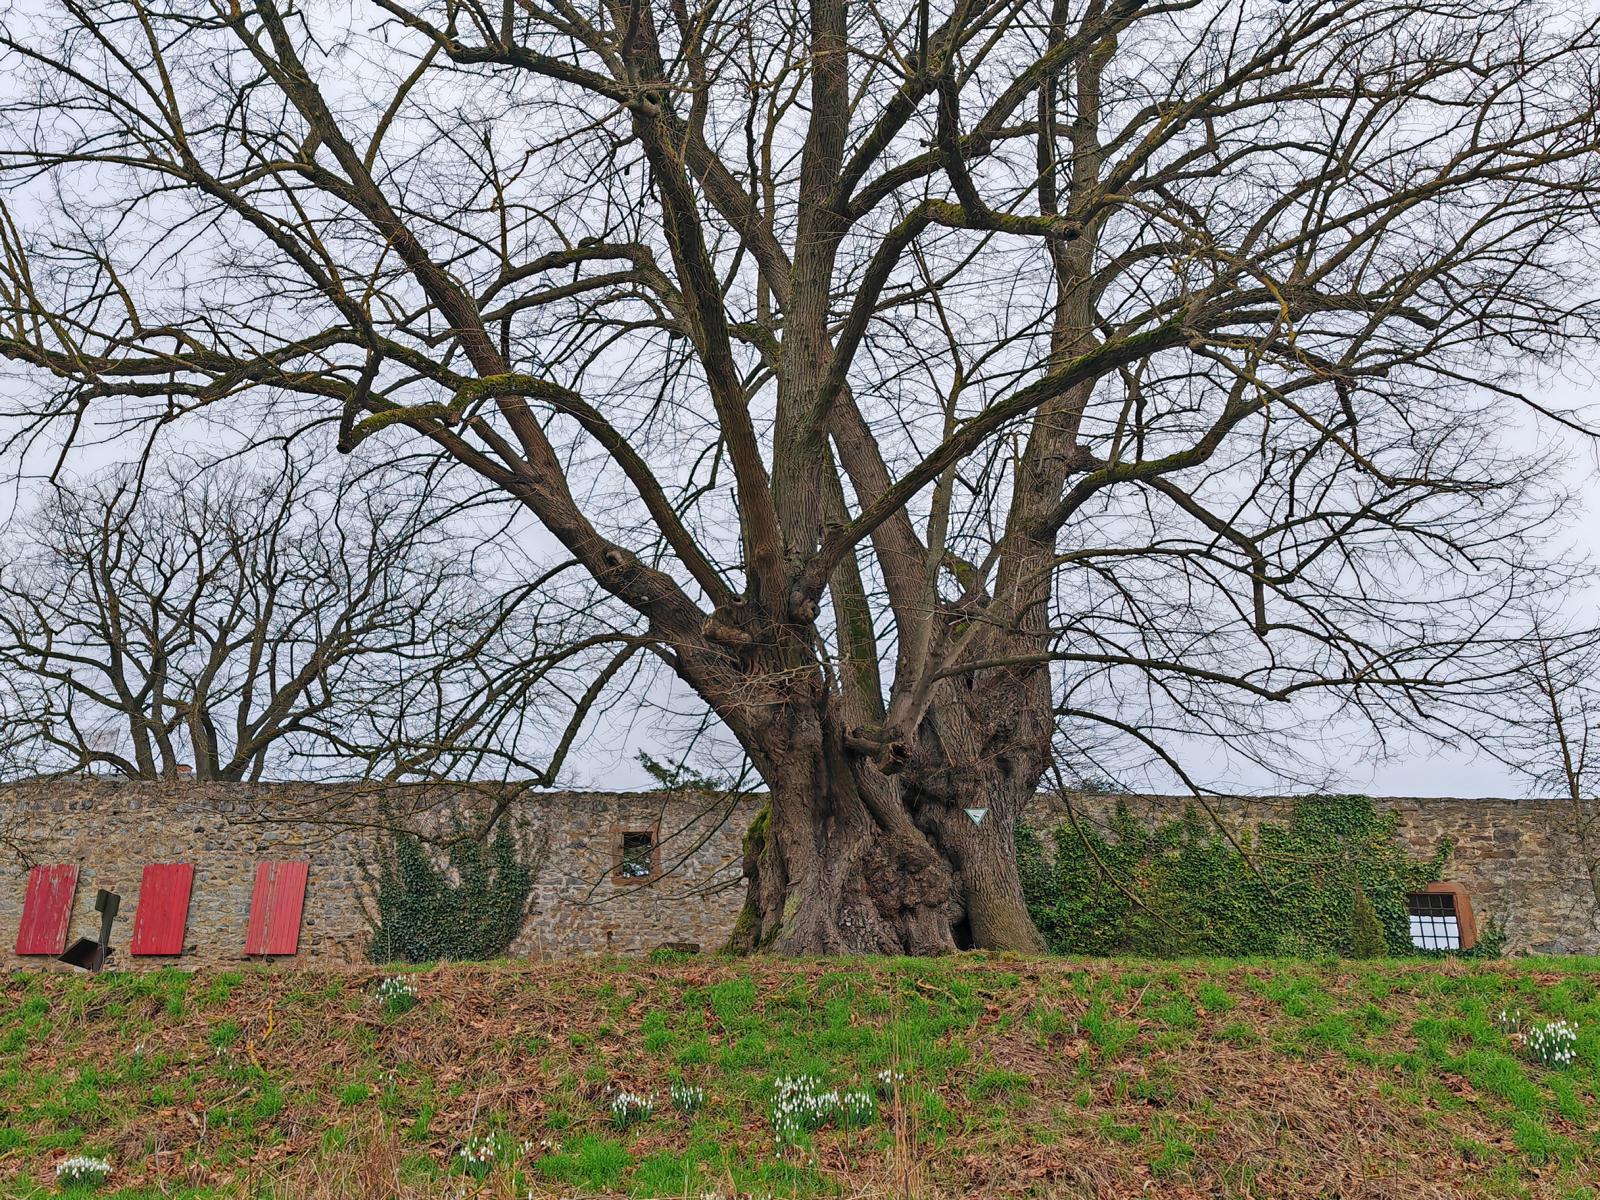 Burglinde am Schloss Homberg (Ohm): die seit 1925 nach dem Abbruch vollständig regenerierte gewaltige Krone